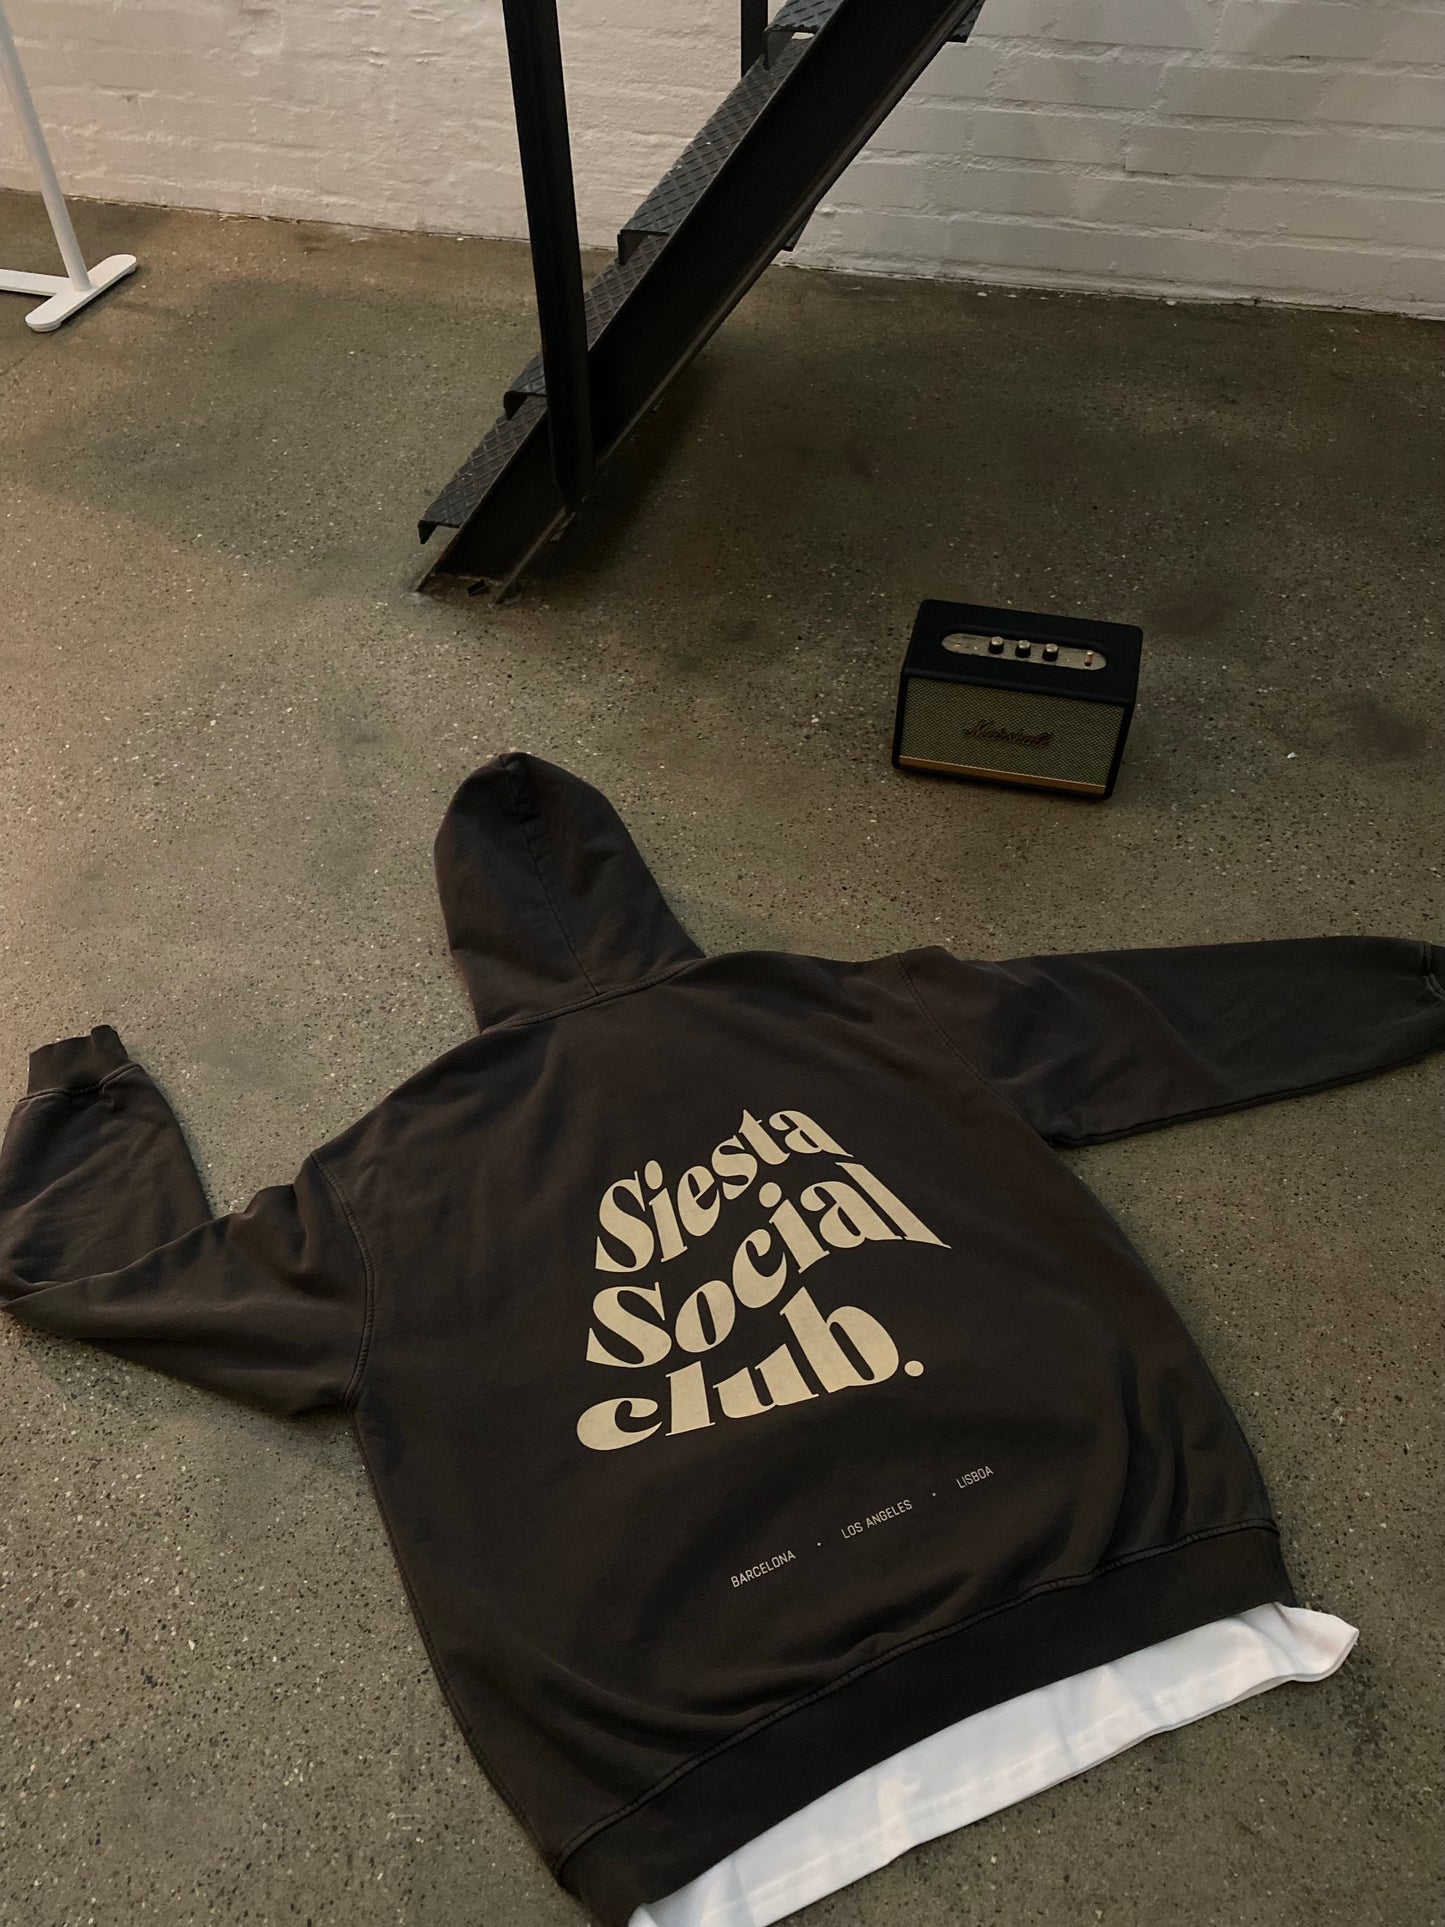 SIESTA SOCIAL CLUB HOODIE - Oversize Heavyweight Hoodie in Carbon Grey